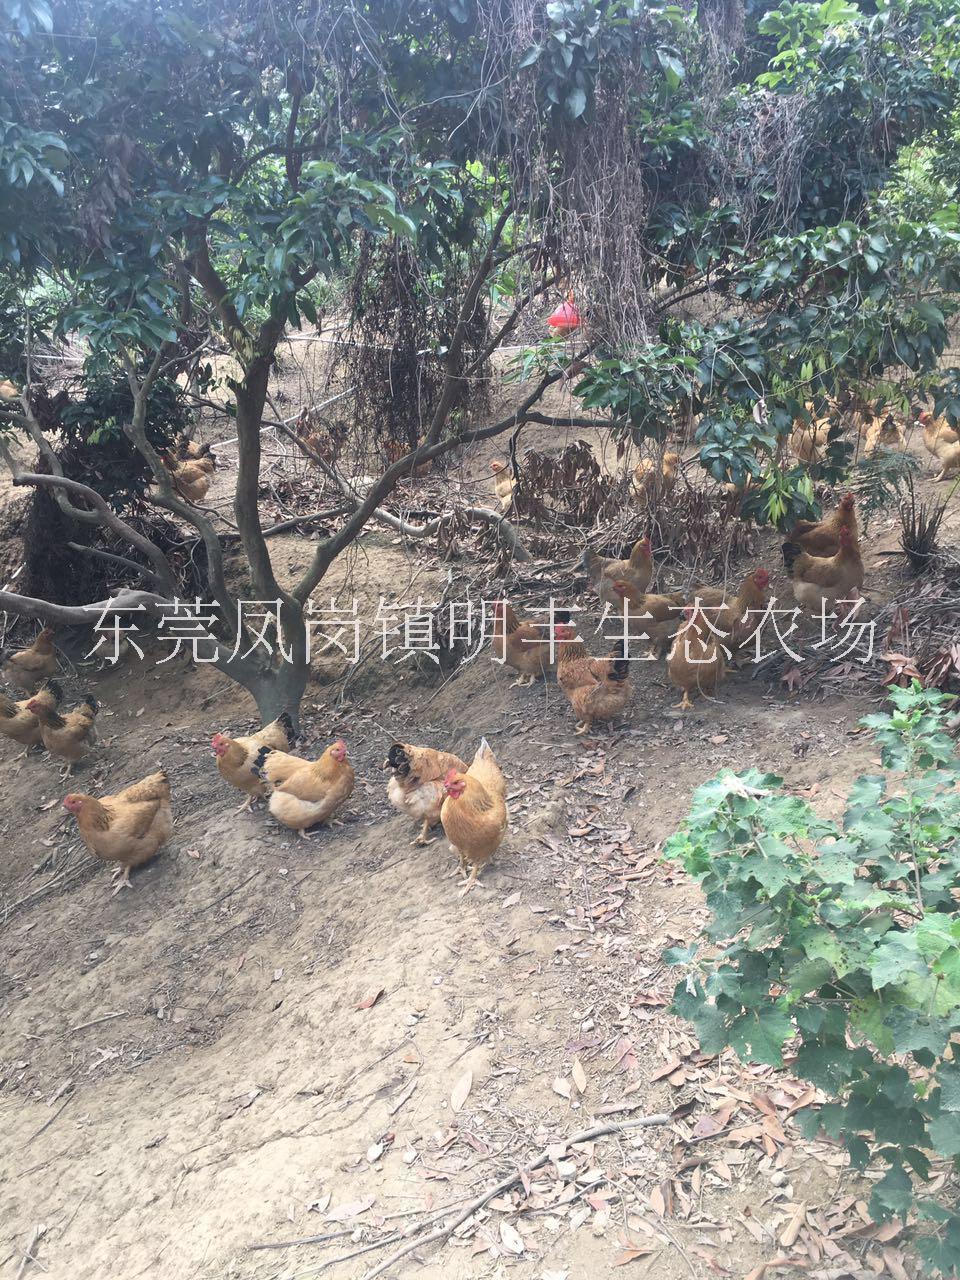 供应散养土鸡 广东农家鸡批发 走地土鸡供应商图片